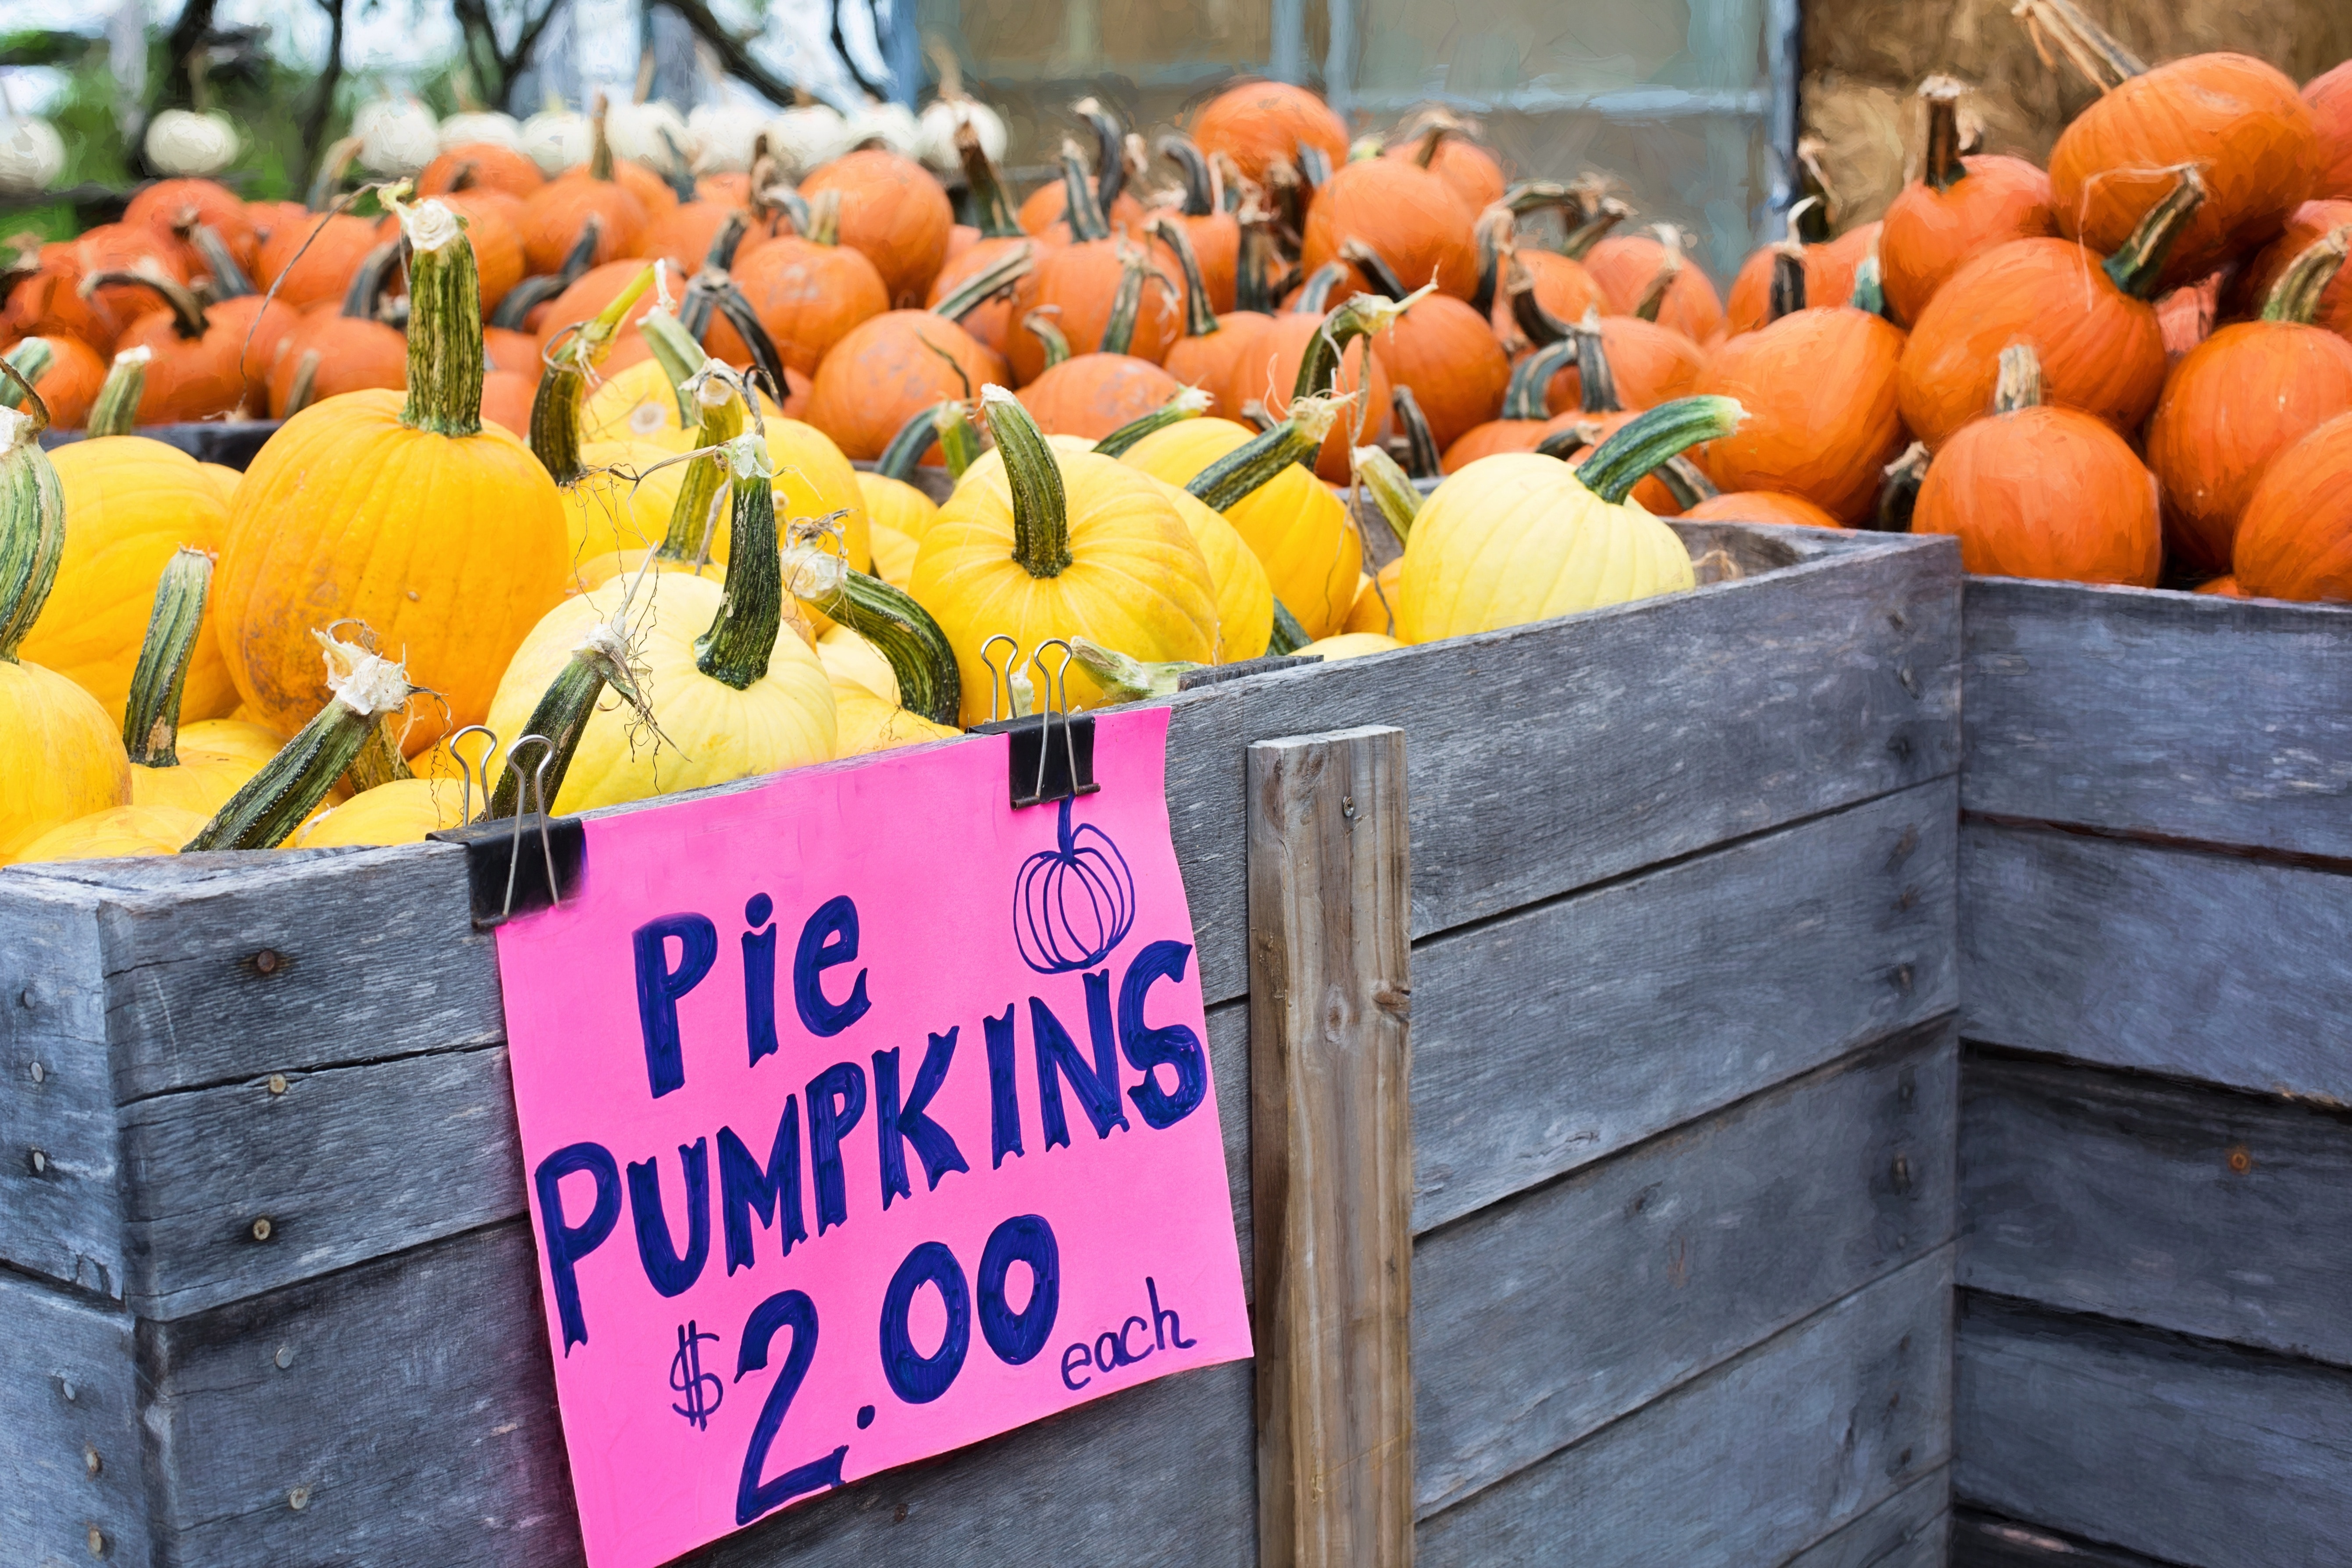 Pie Pumpkins, Autumn, Fall, Pumpkins, fruit, market